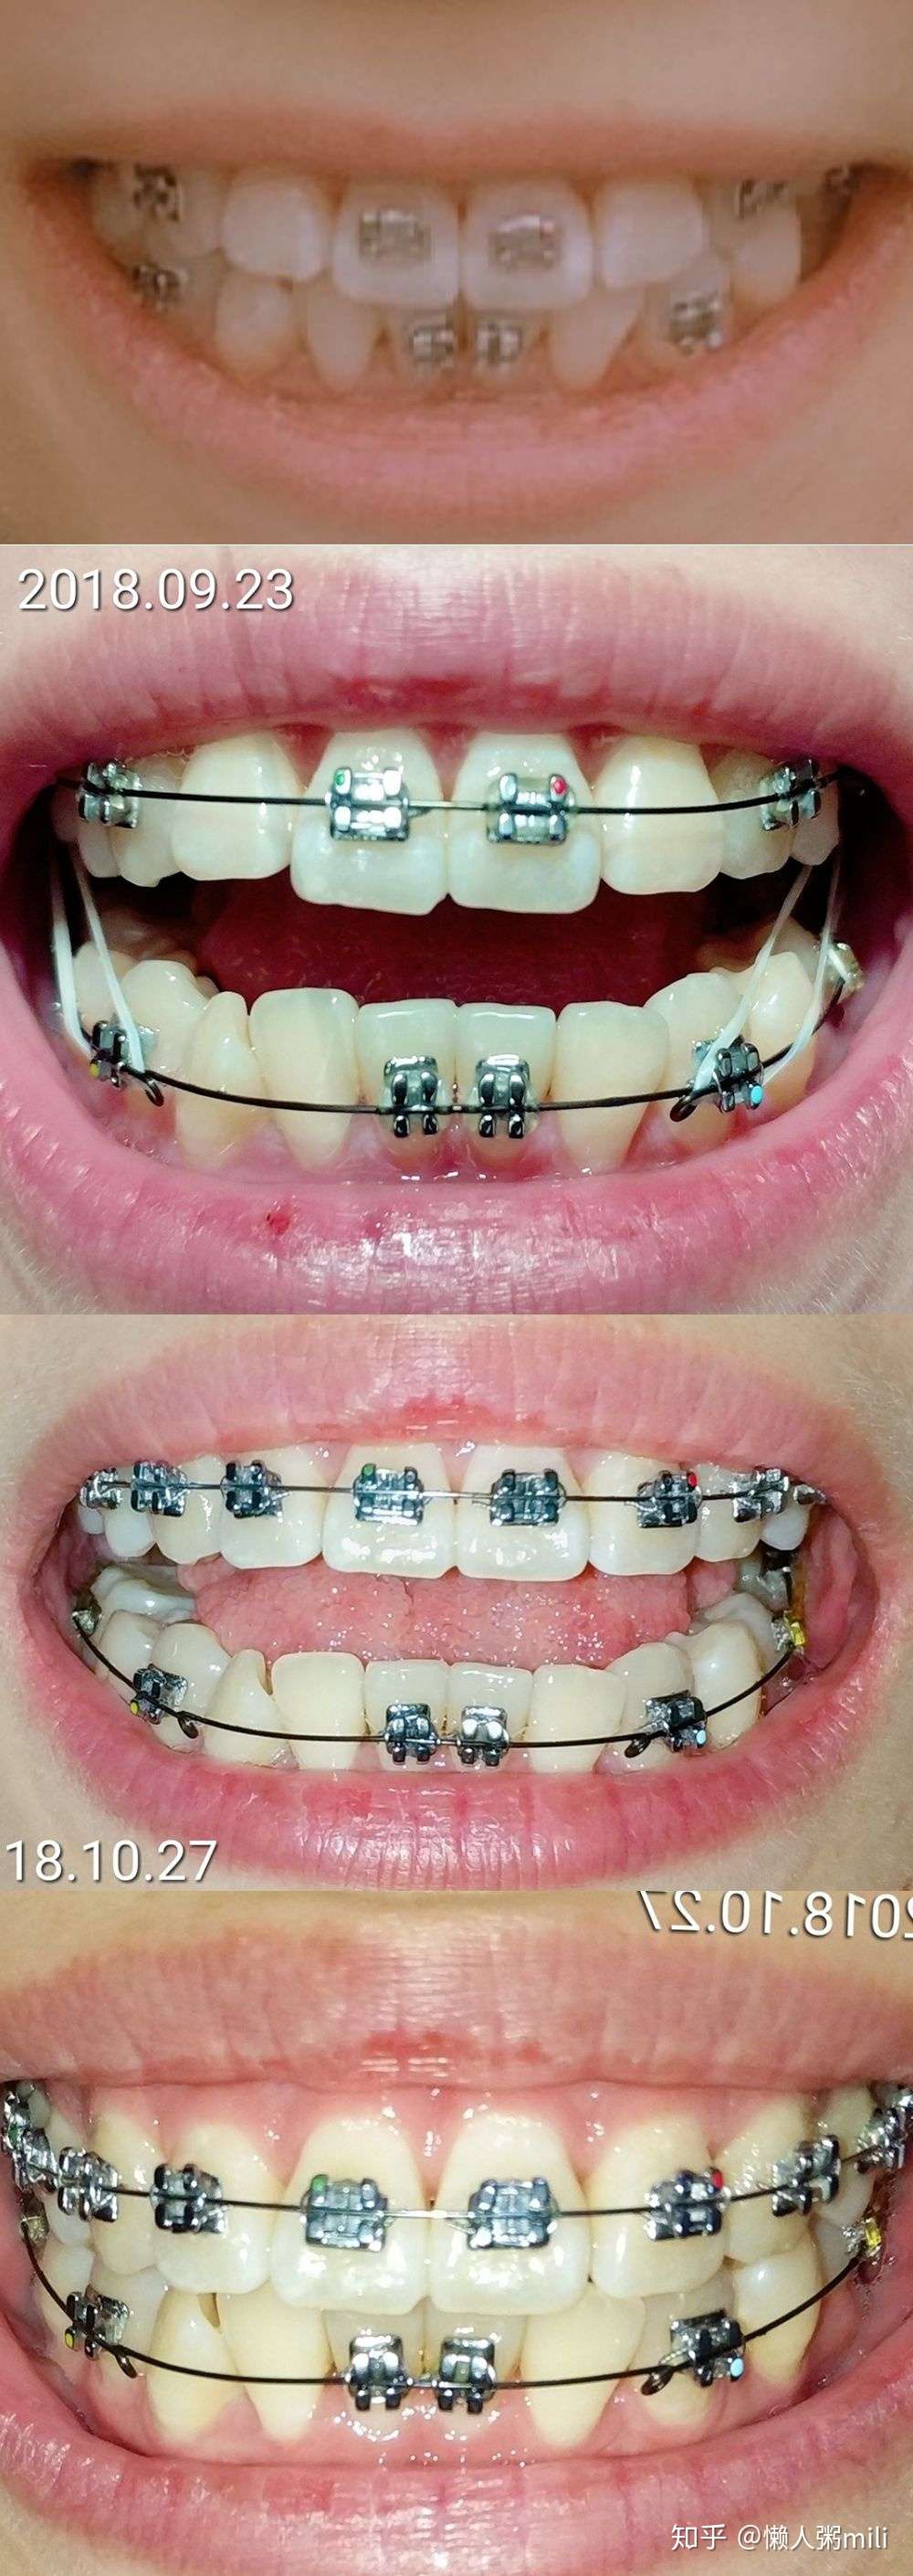 24岁拔磨牙大牙牙齿矫正记录 知乎